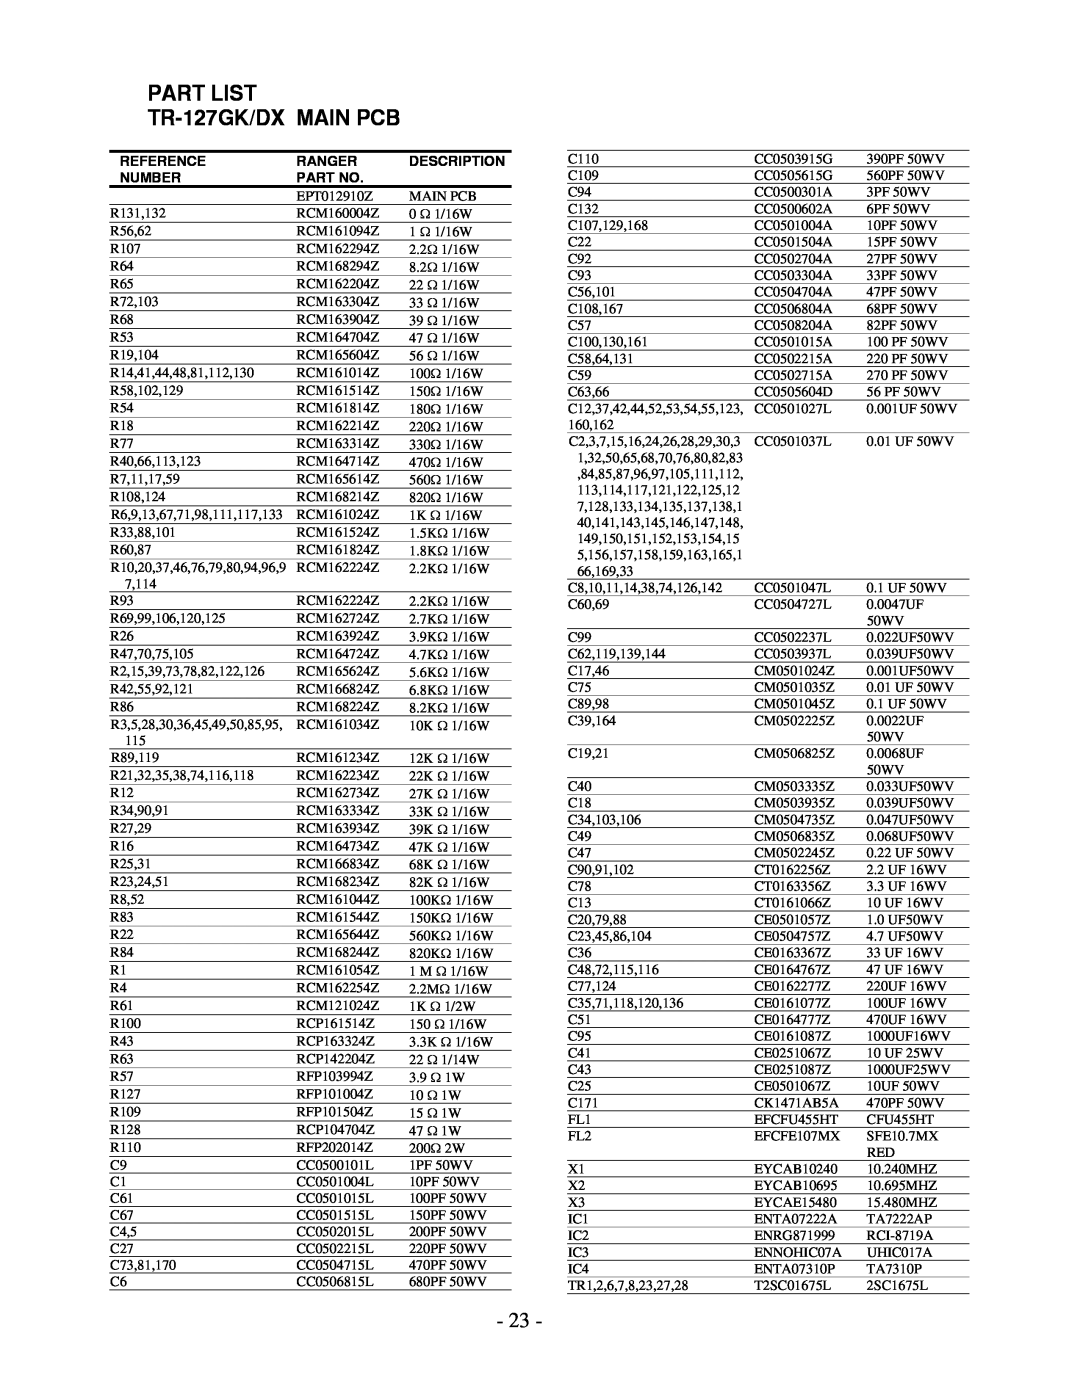 Ranger TR-127GK/DX service manual PART LIST TR−127GK/DX MAIN PCB, Reference, Ranger, Description, Number 